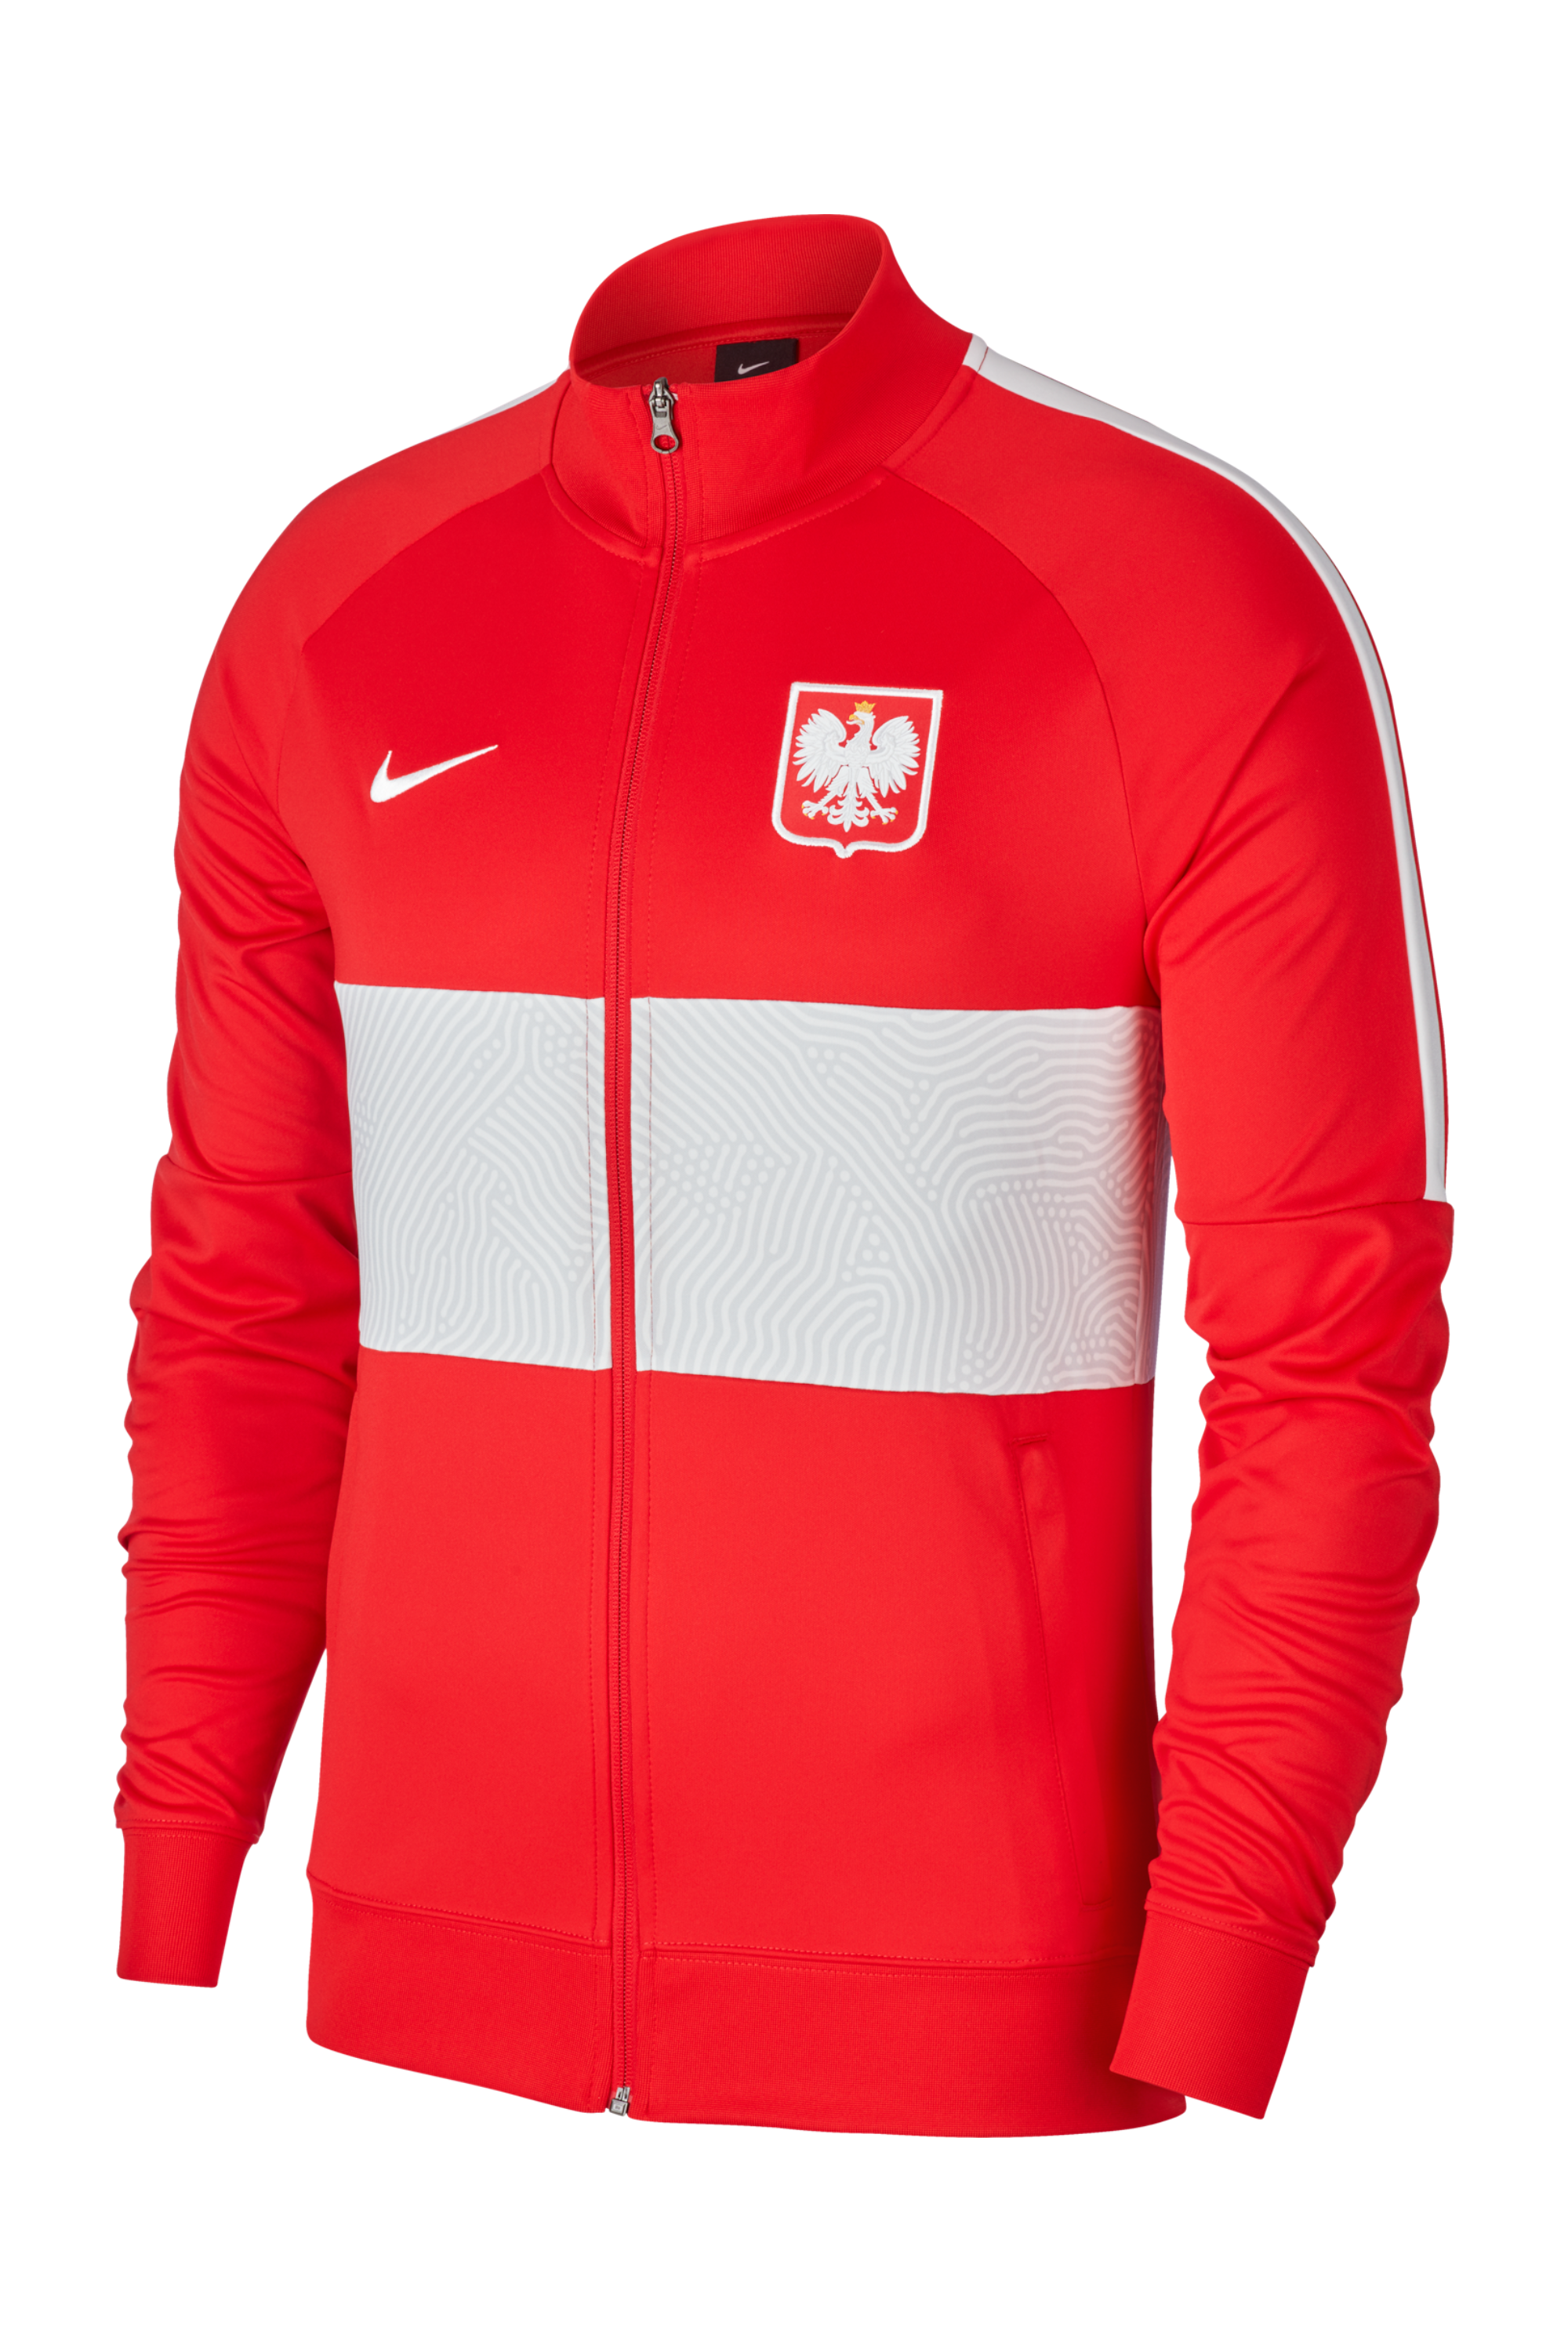 Красная олимпийка Nike. Футбольная куртка. Nike Польша. Nike poland